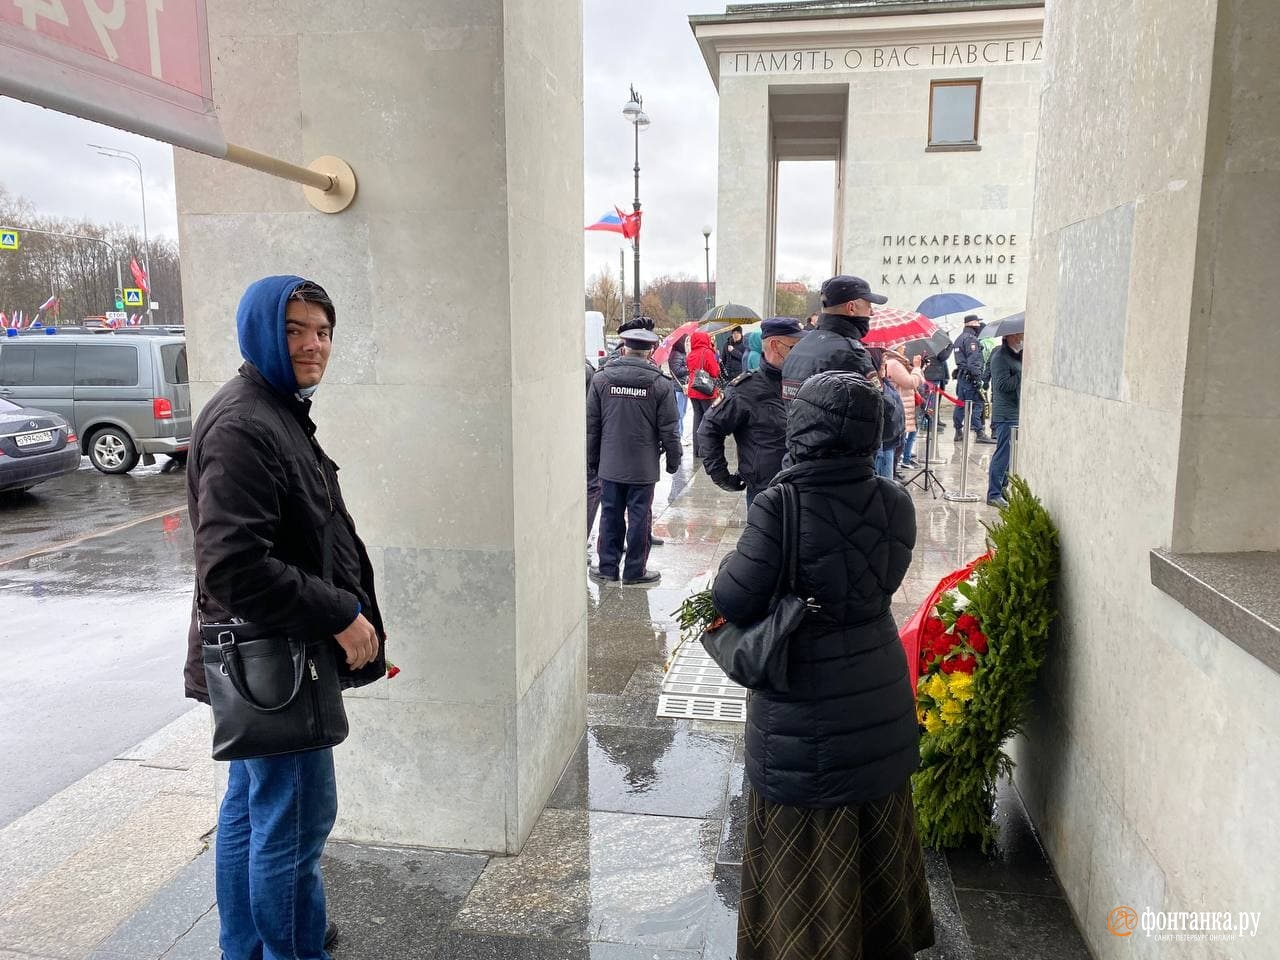 «Вы к какому классу здесь относитесь?» У входа на Пискарёвское кладбище петербуржцам велели ждать окончания официального мероприятия